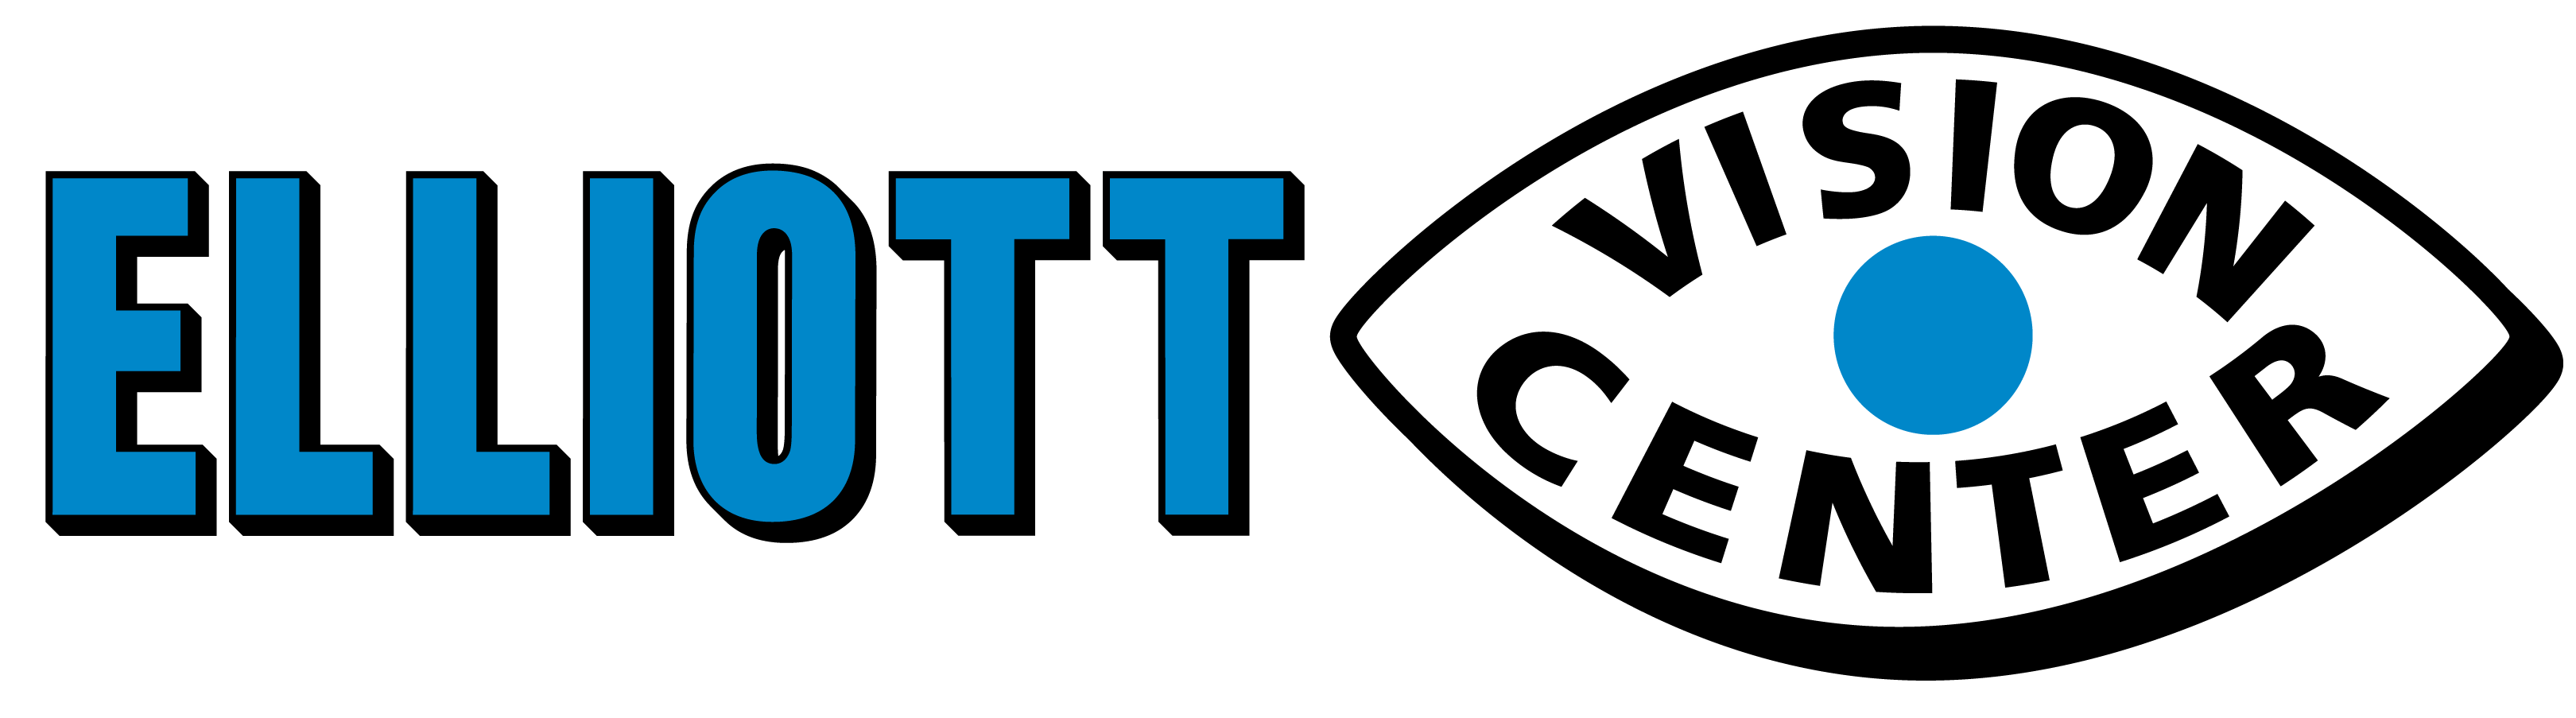 Elliott Vision Center Logo